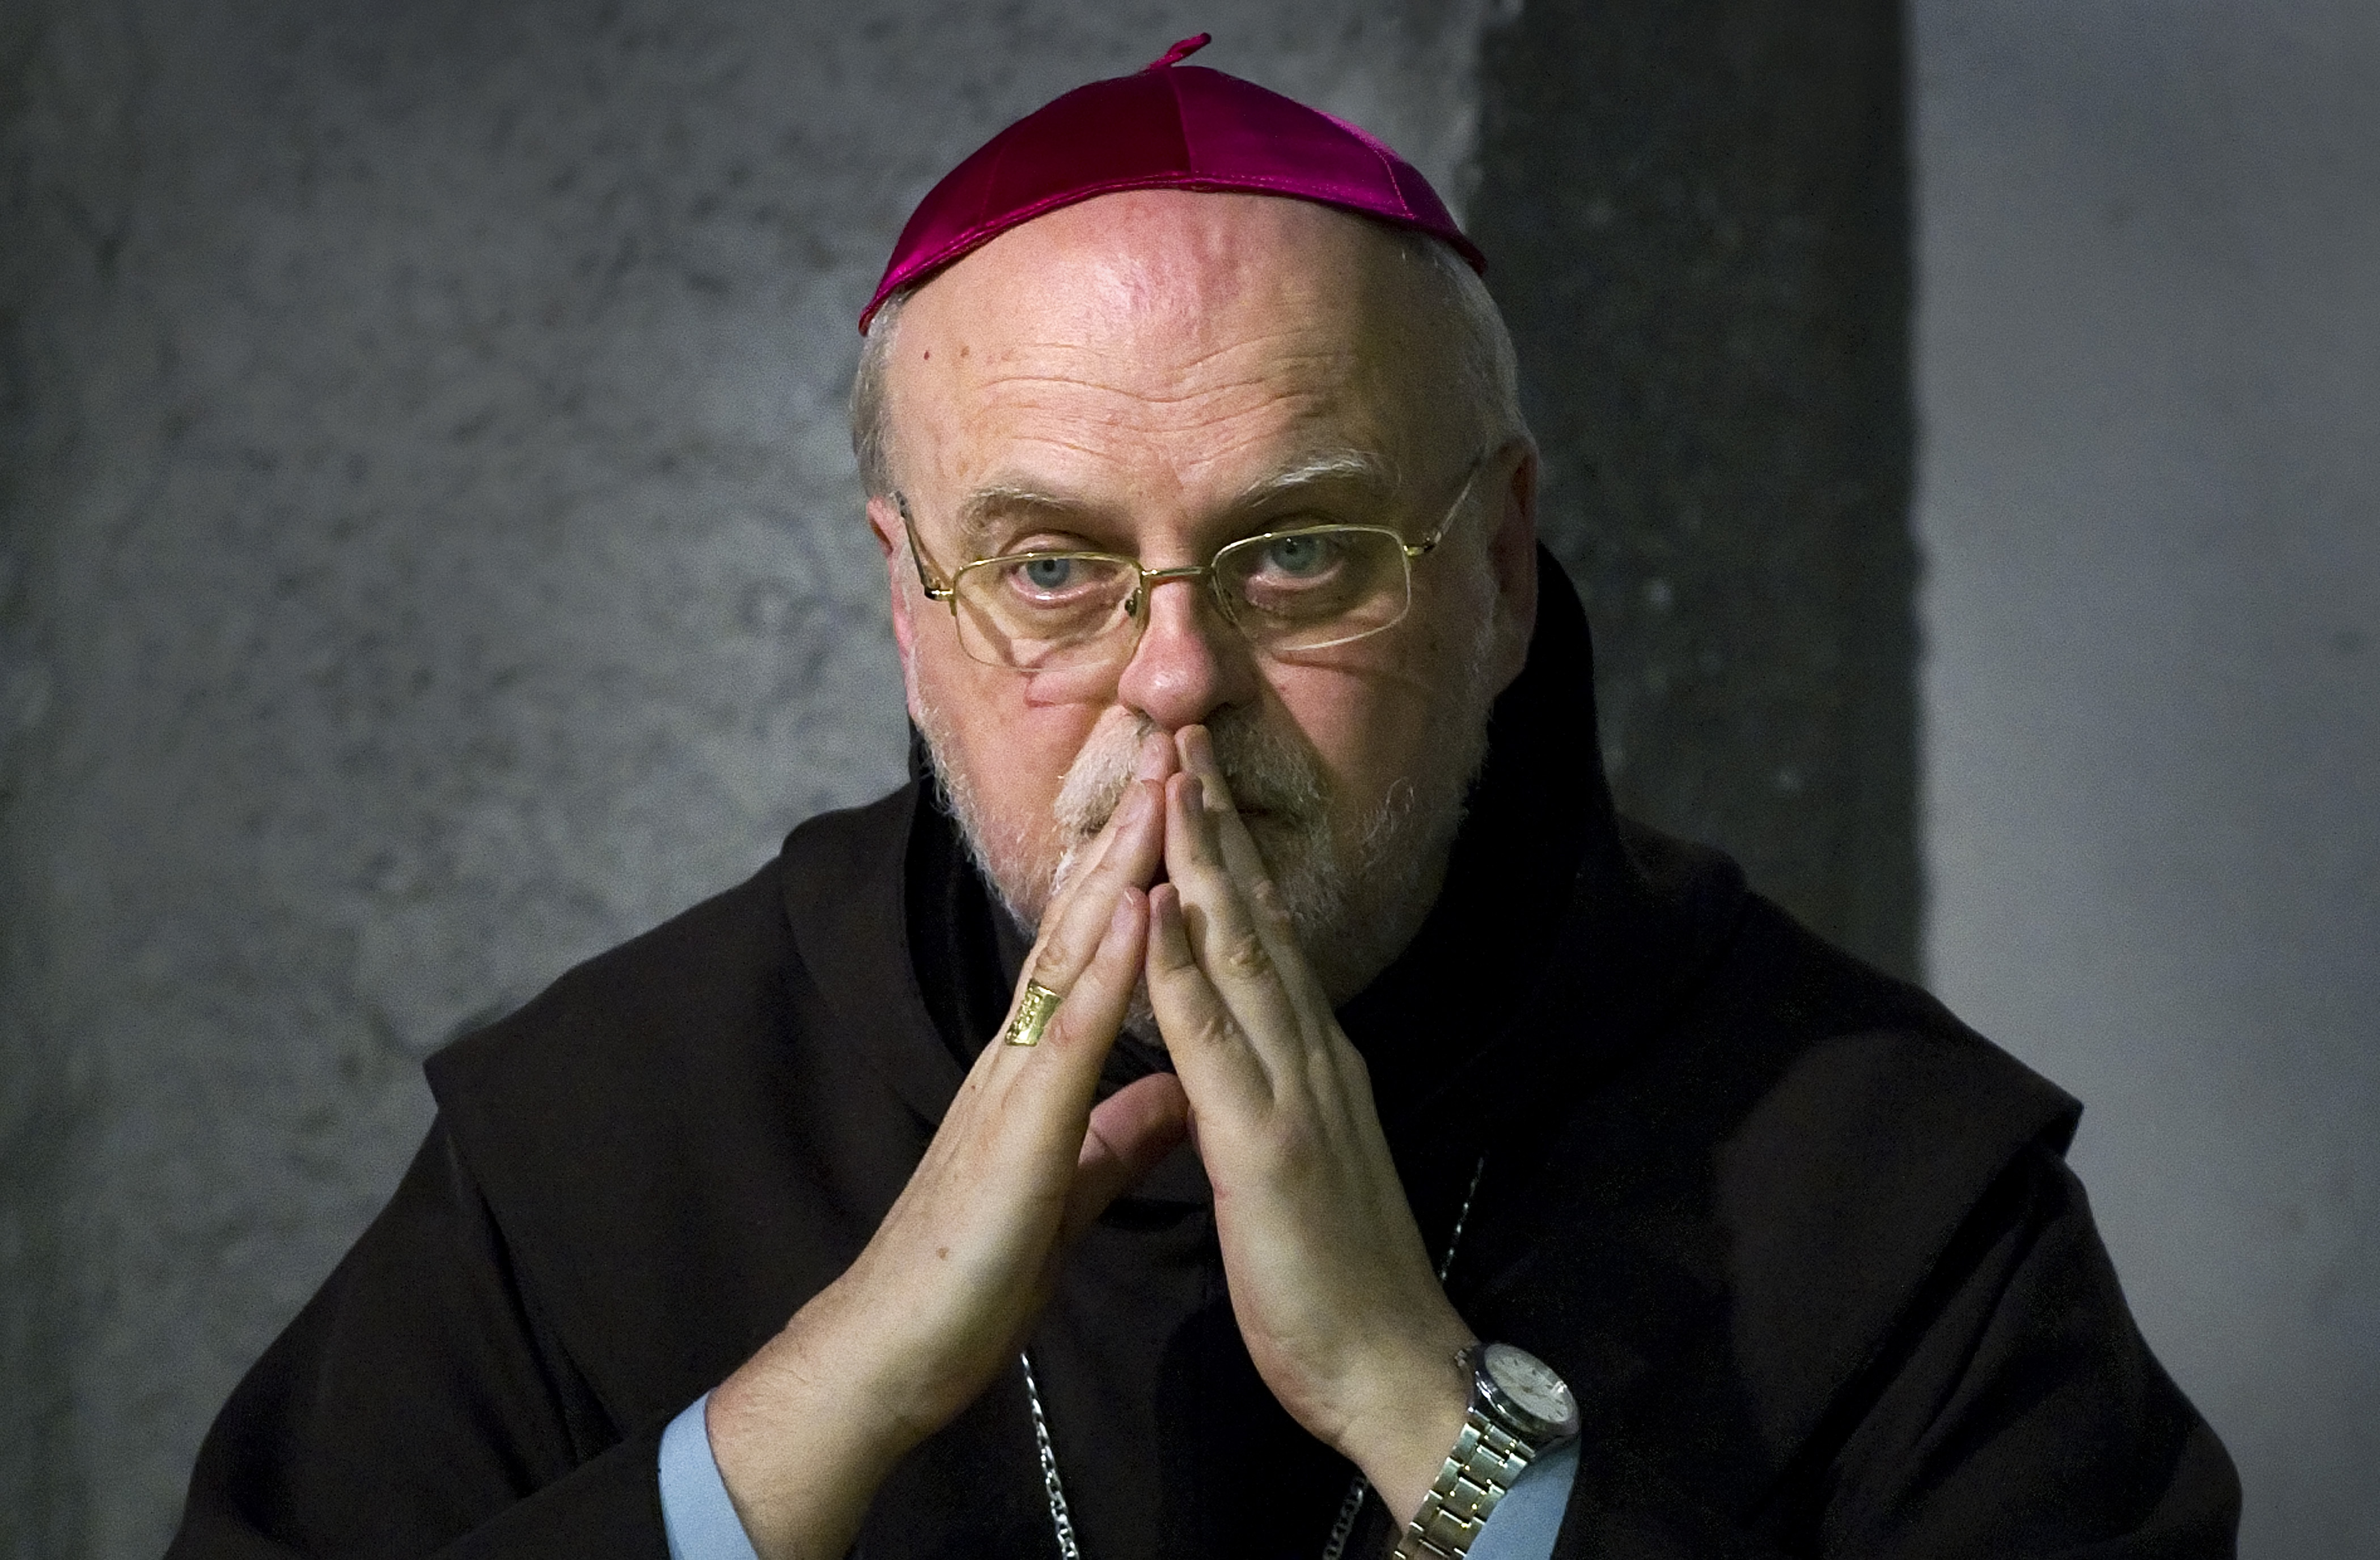 Biskop Anders Arborelius bad offren om ursäkt på en presskonferens.